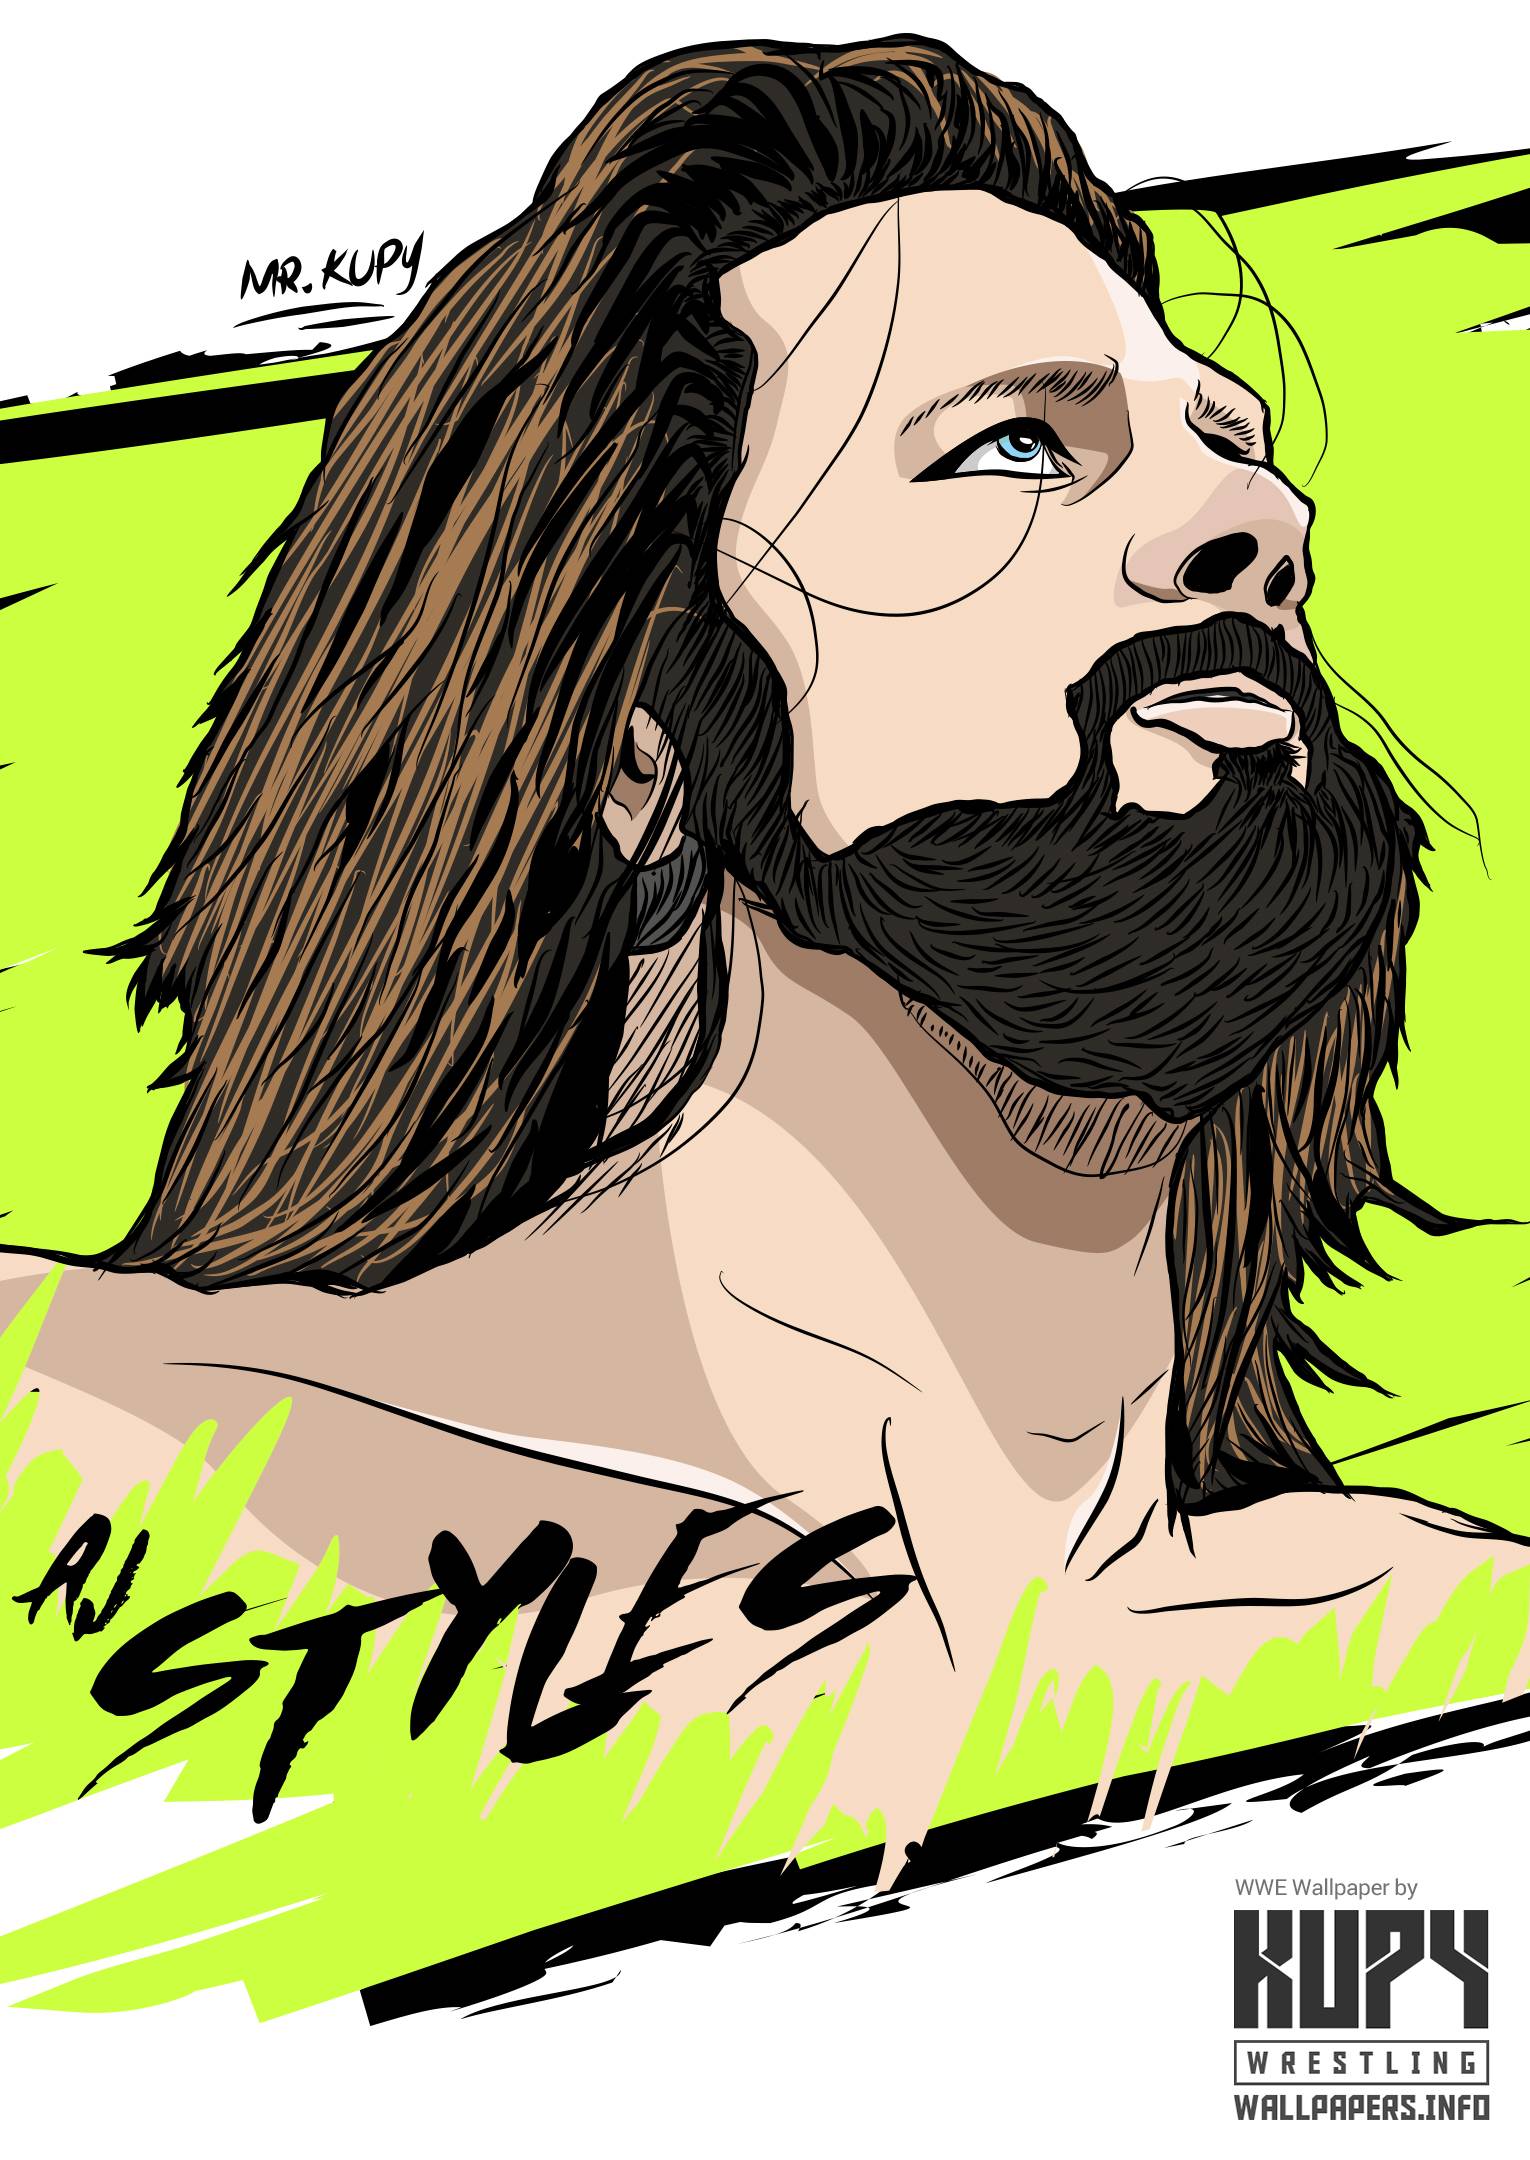 AJ Styles WWE Art wallpaper! Wrestling Wallpaper